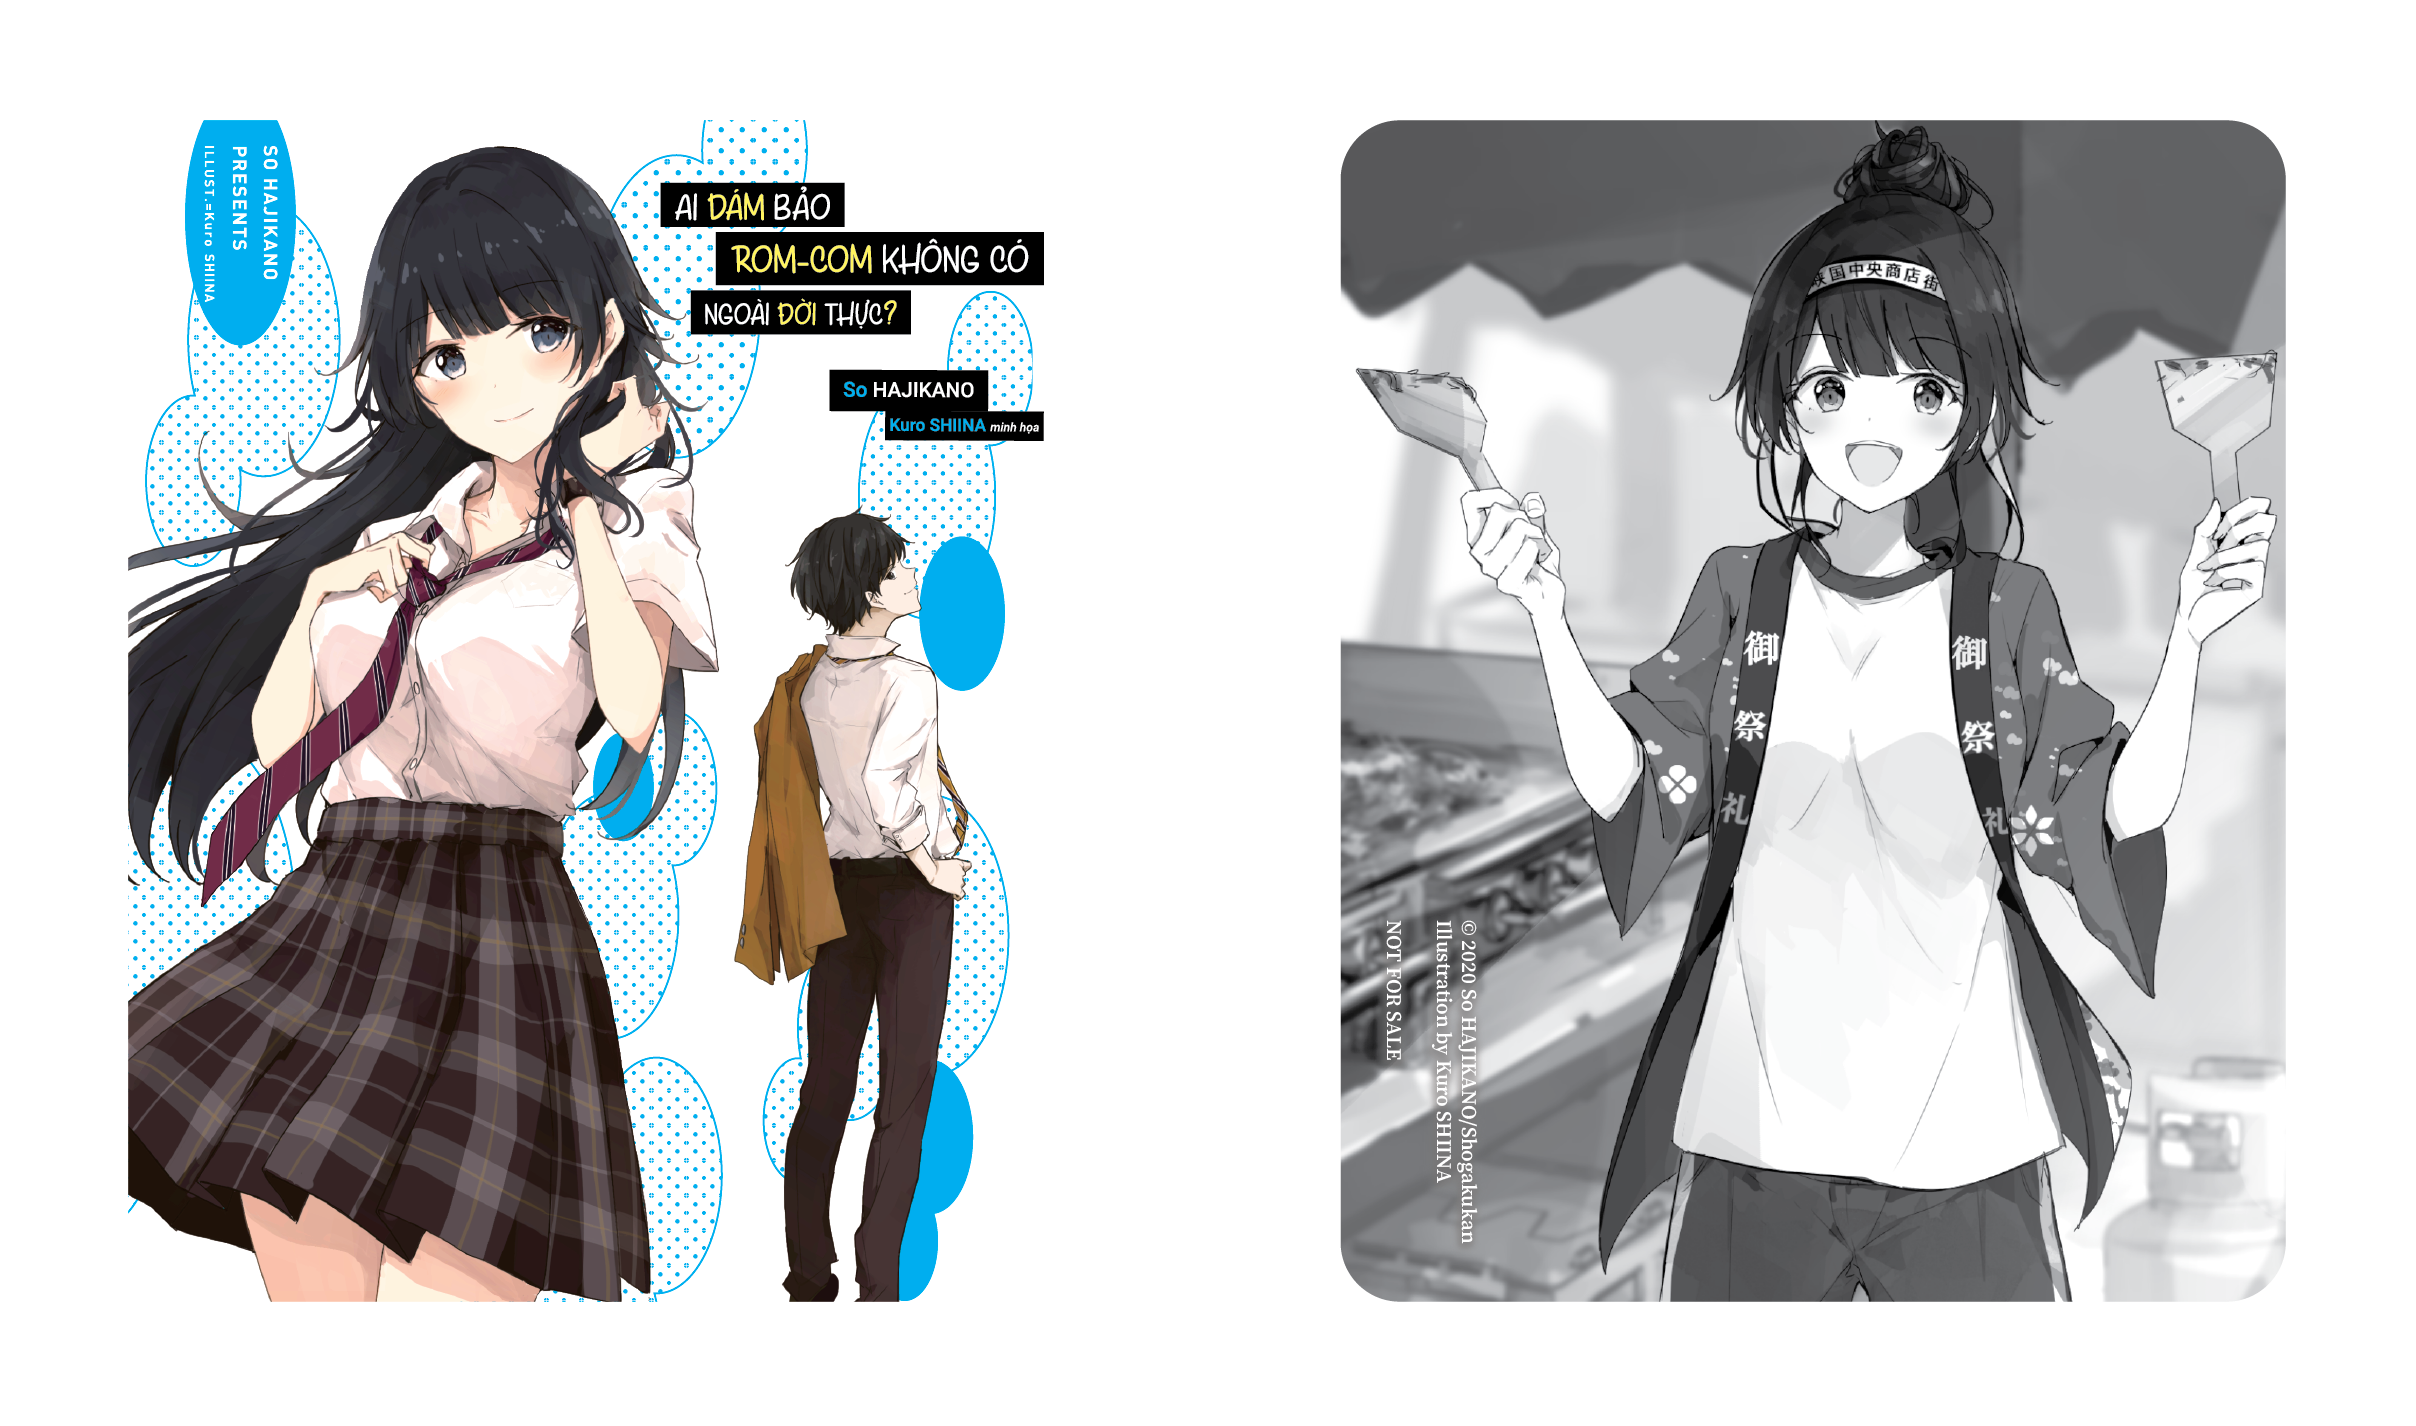 Light Novel Ai dám bảo rom-com không có ngoài đời thực? - Tập 3 - Bản phổ thông và đặc biệt tặng Poster - Hikari